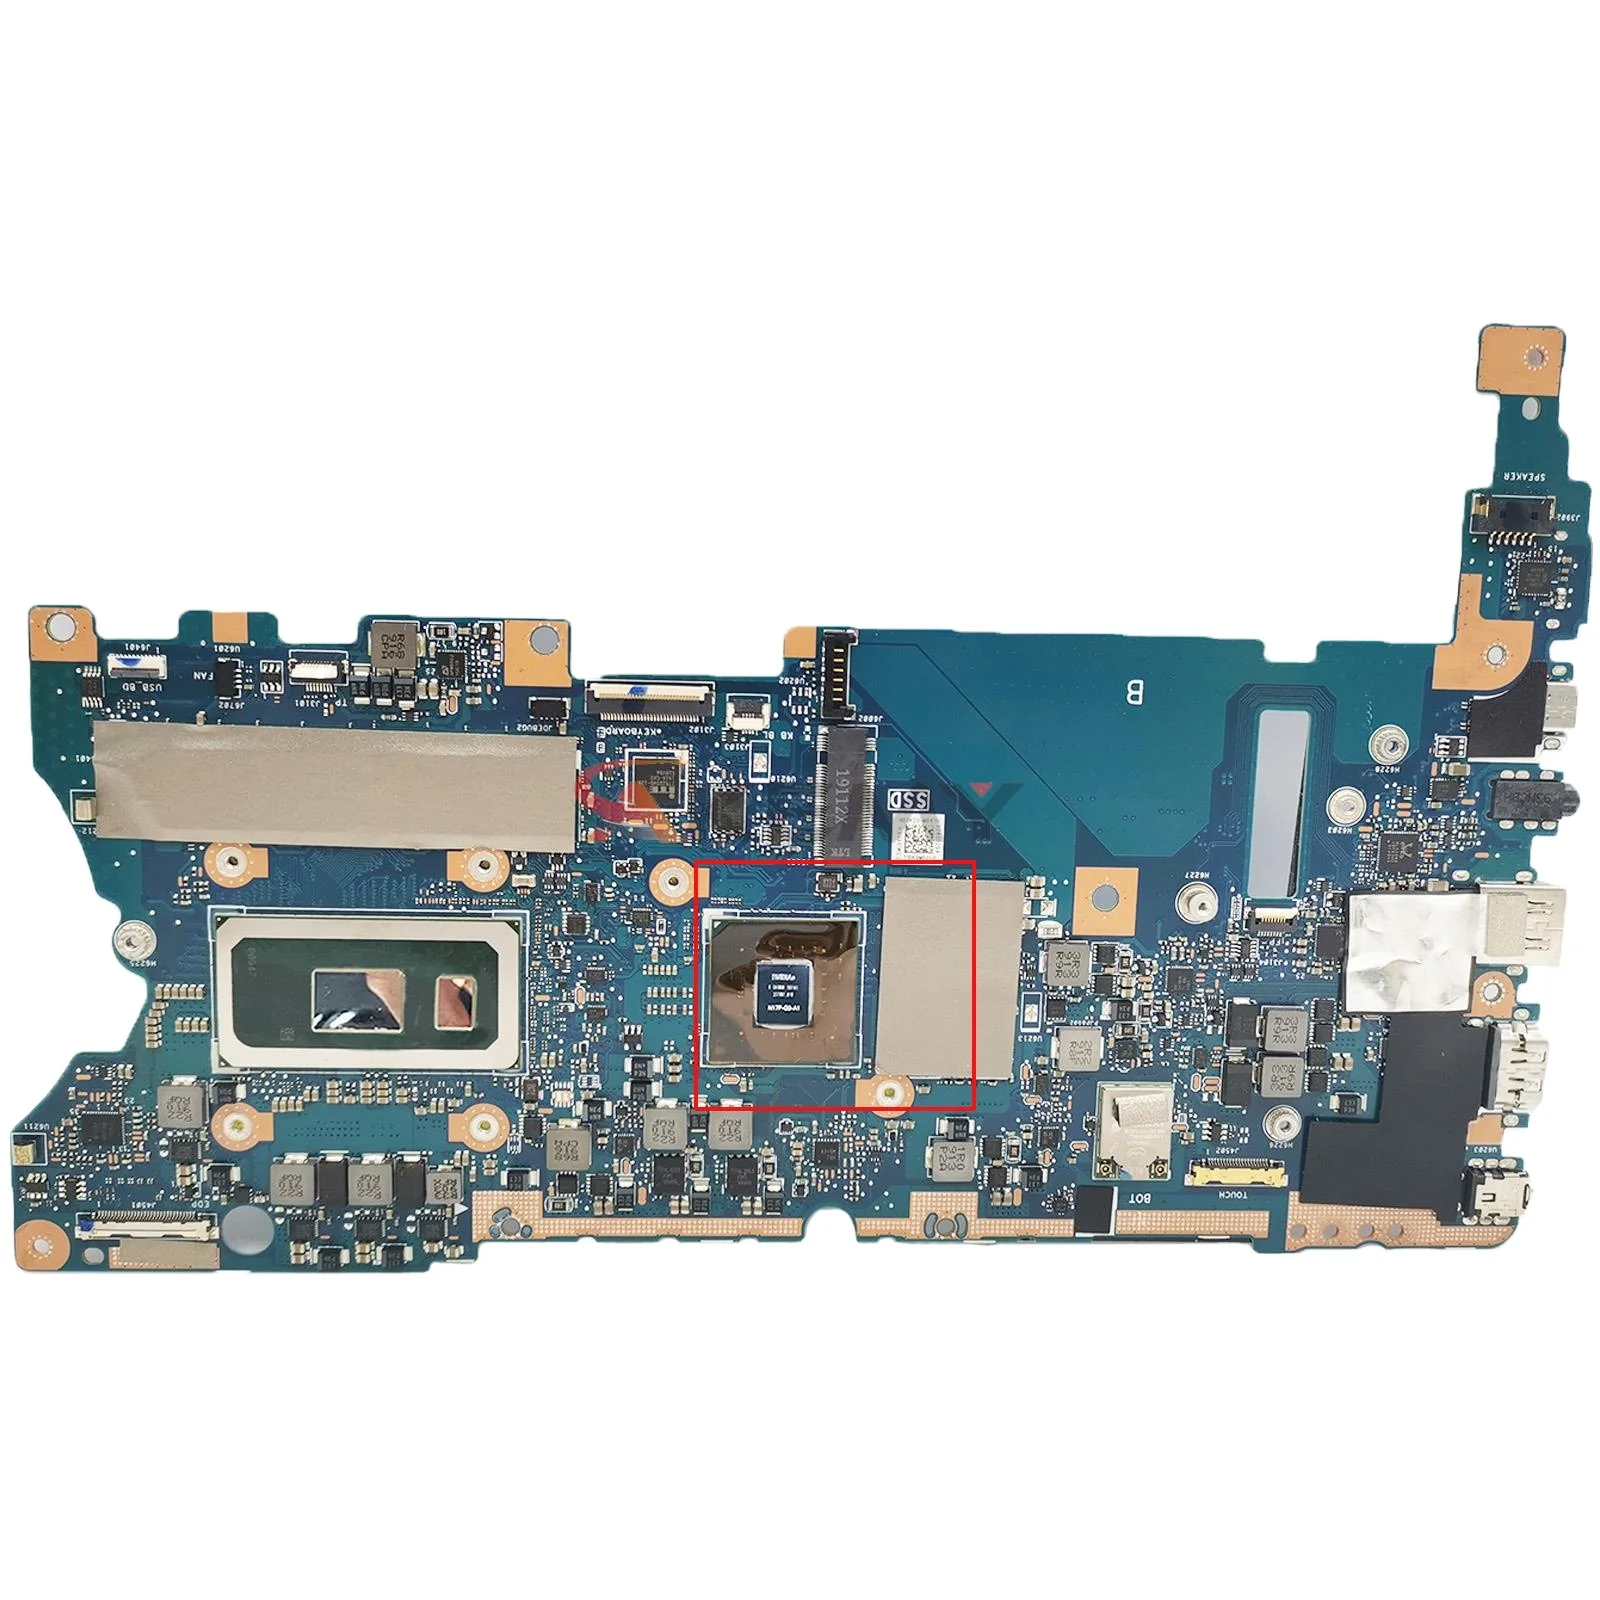 

UX461F Mainboard For ASUS Zenbook Flip 14 UX461 UX461FN UX461FA Laptop Motherboard I5 I7 8th Gen 8G/16G-RAM